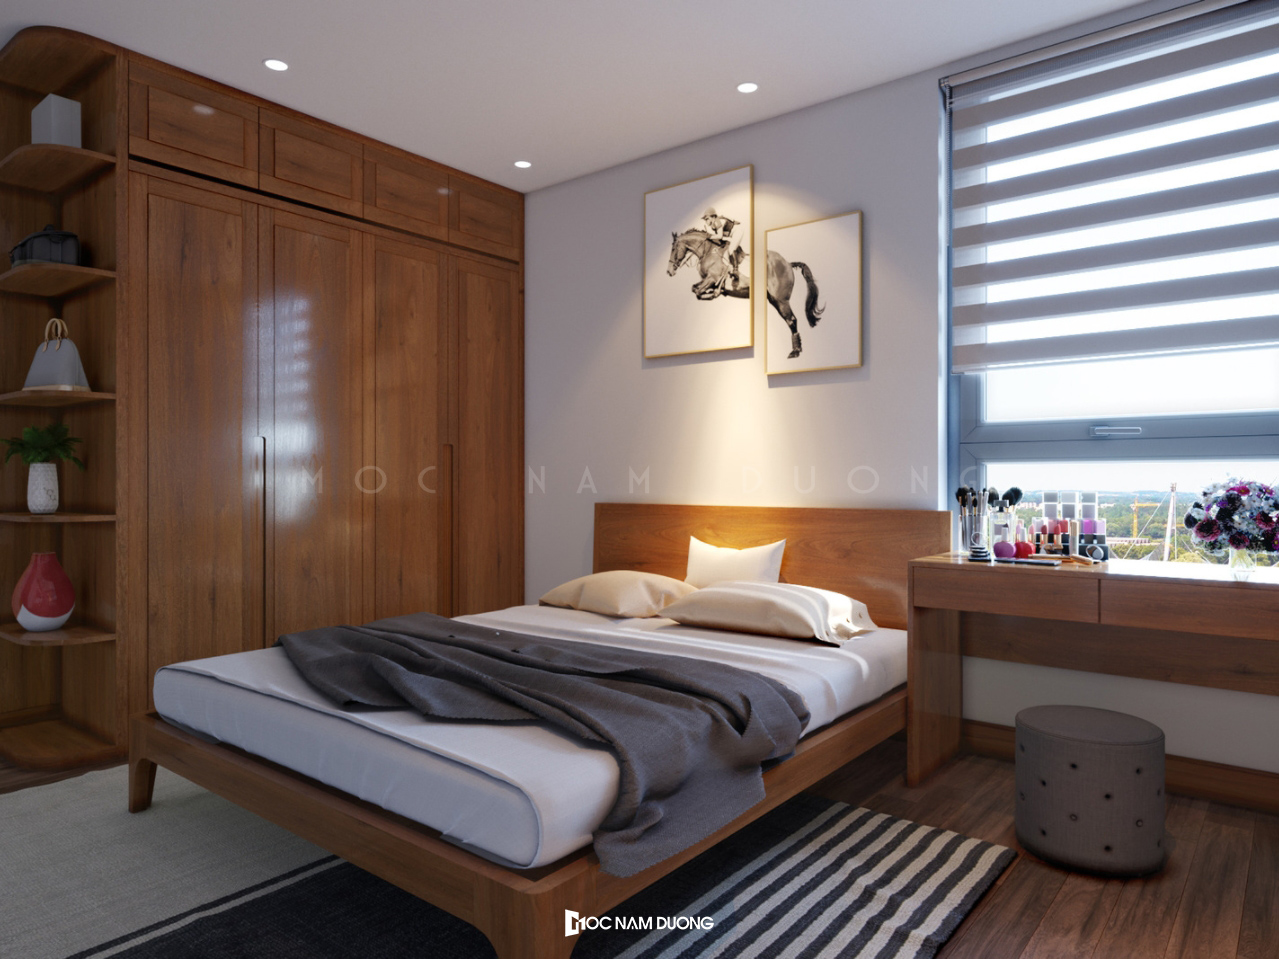 Mẫu thiết kế phòng ngủ đẹp phong cách hiện đại đơn giản từ gỗ công nghiệp